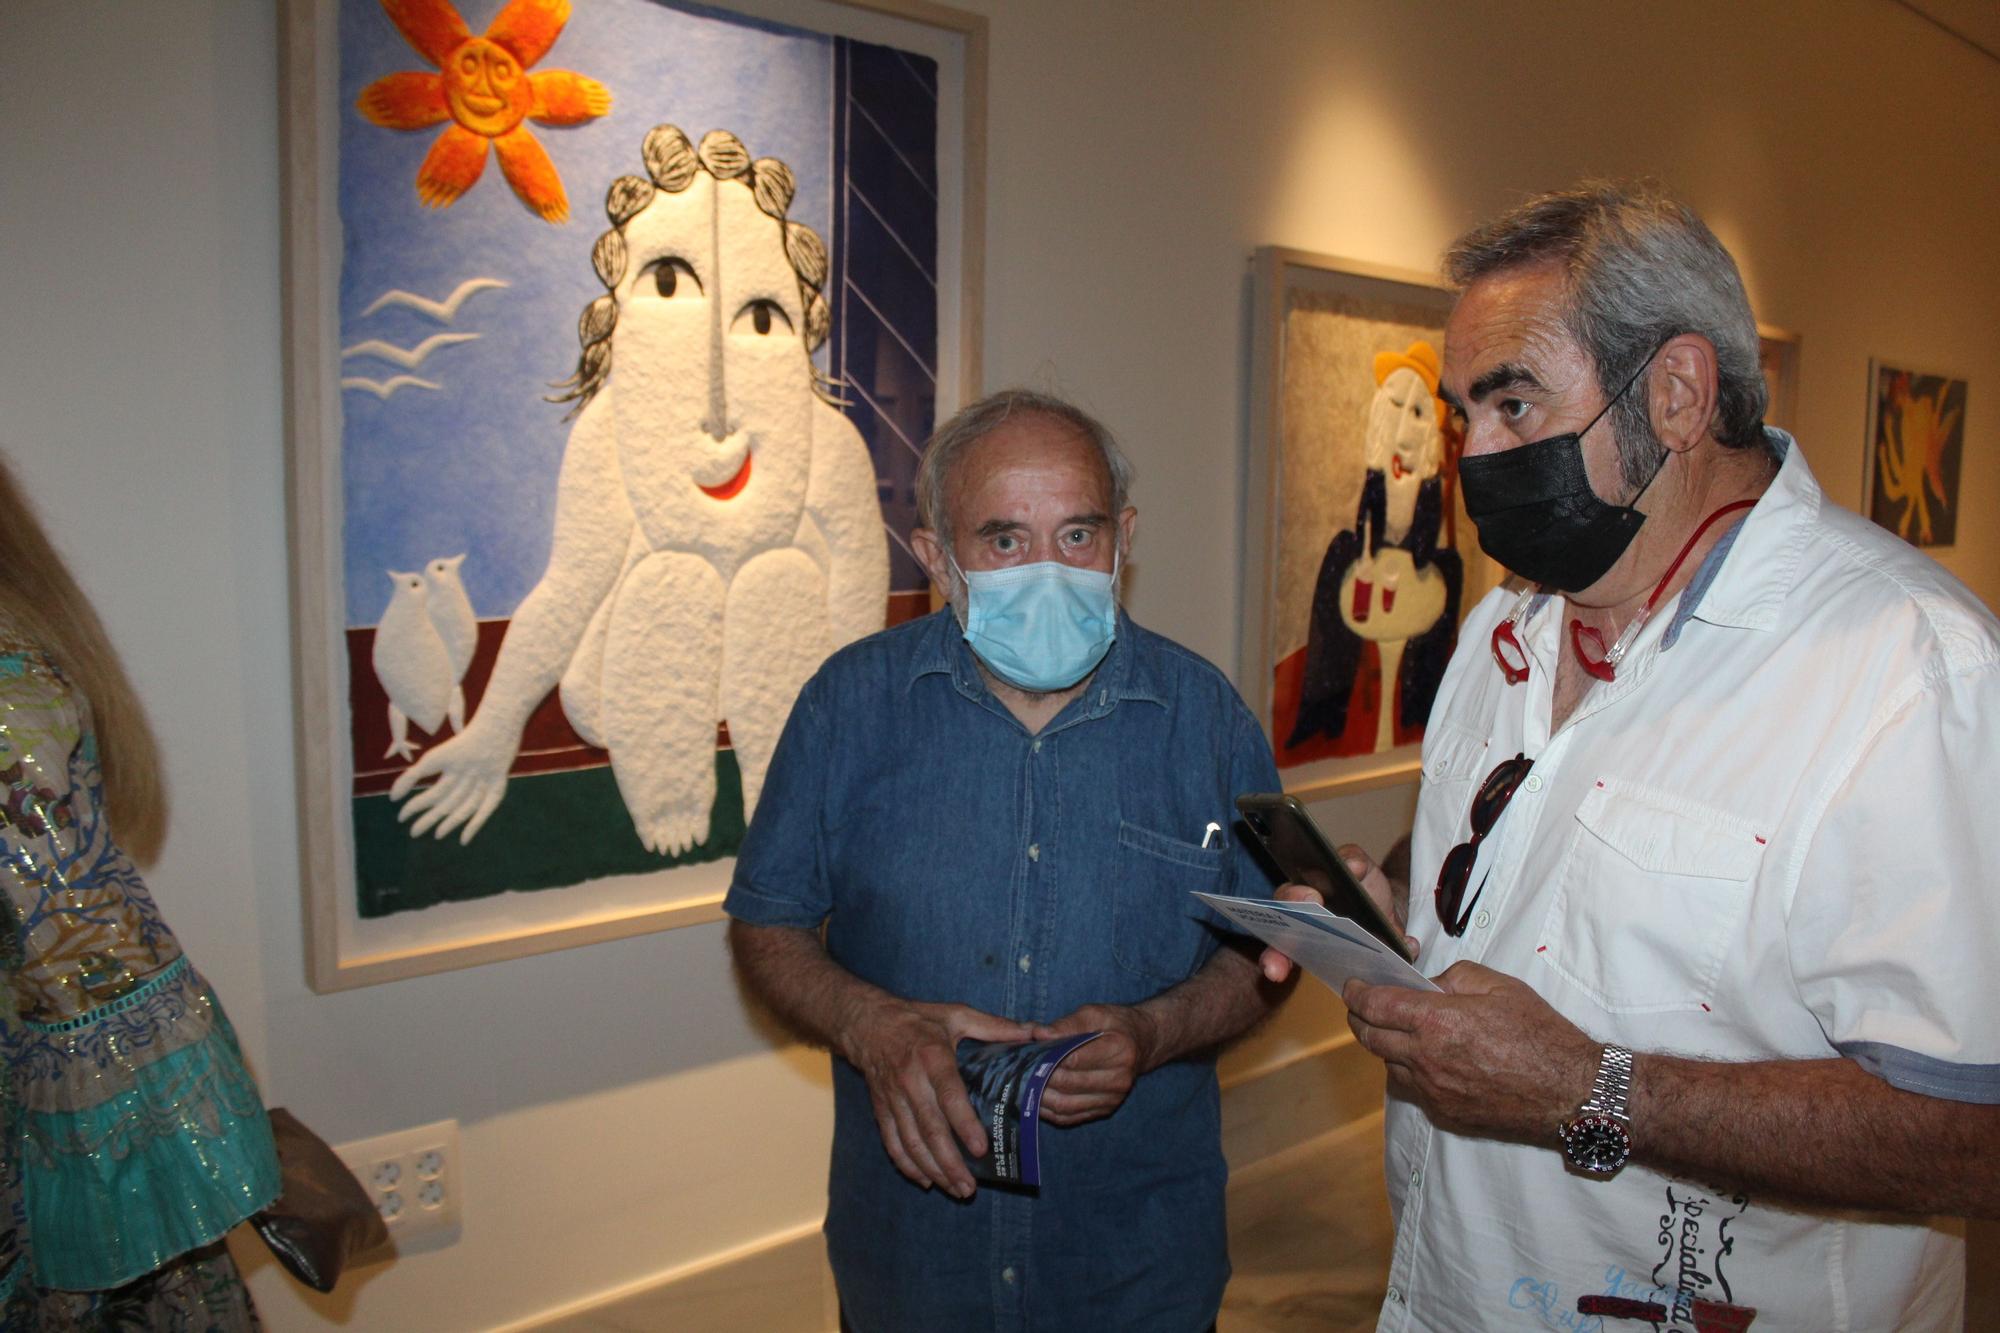 Ripollés vuelve a exponer su arte en Castellón tras 40 años